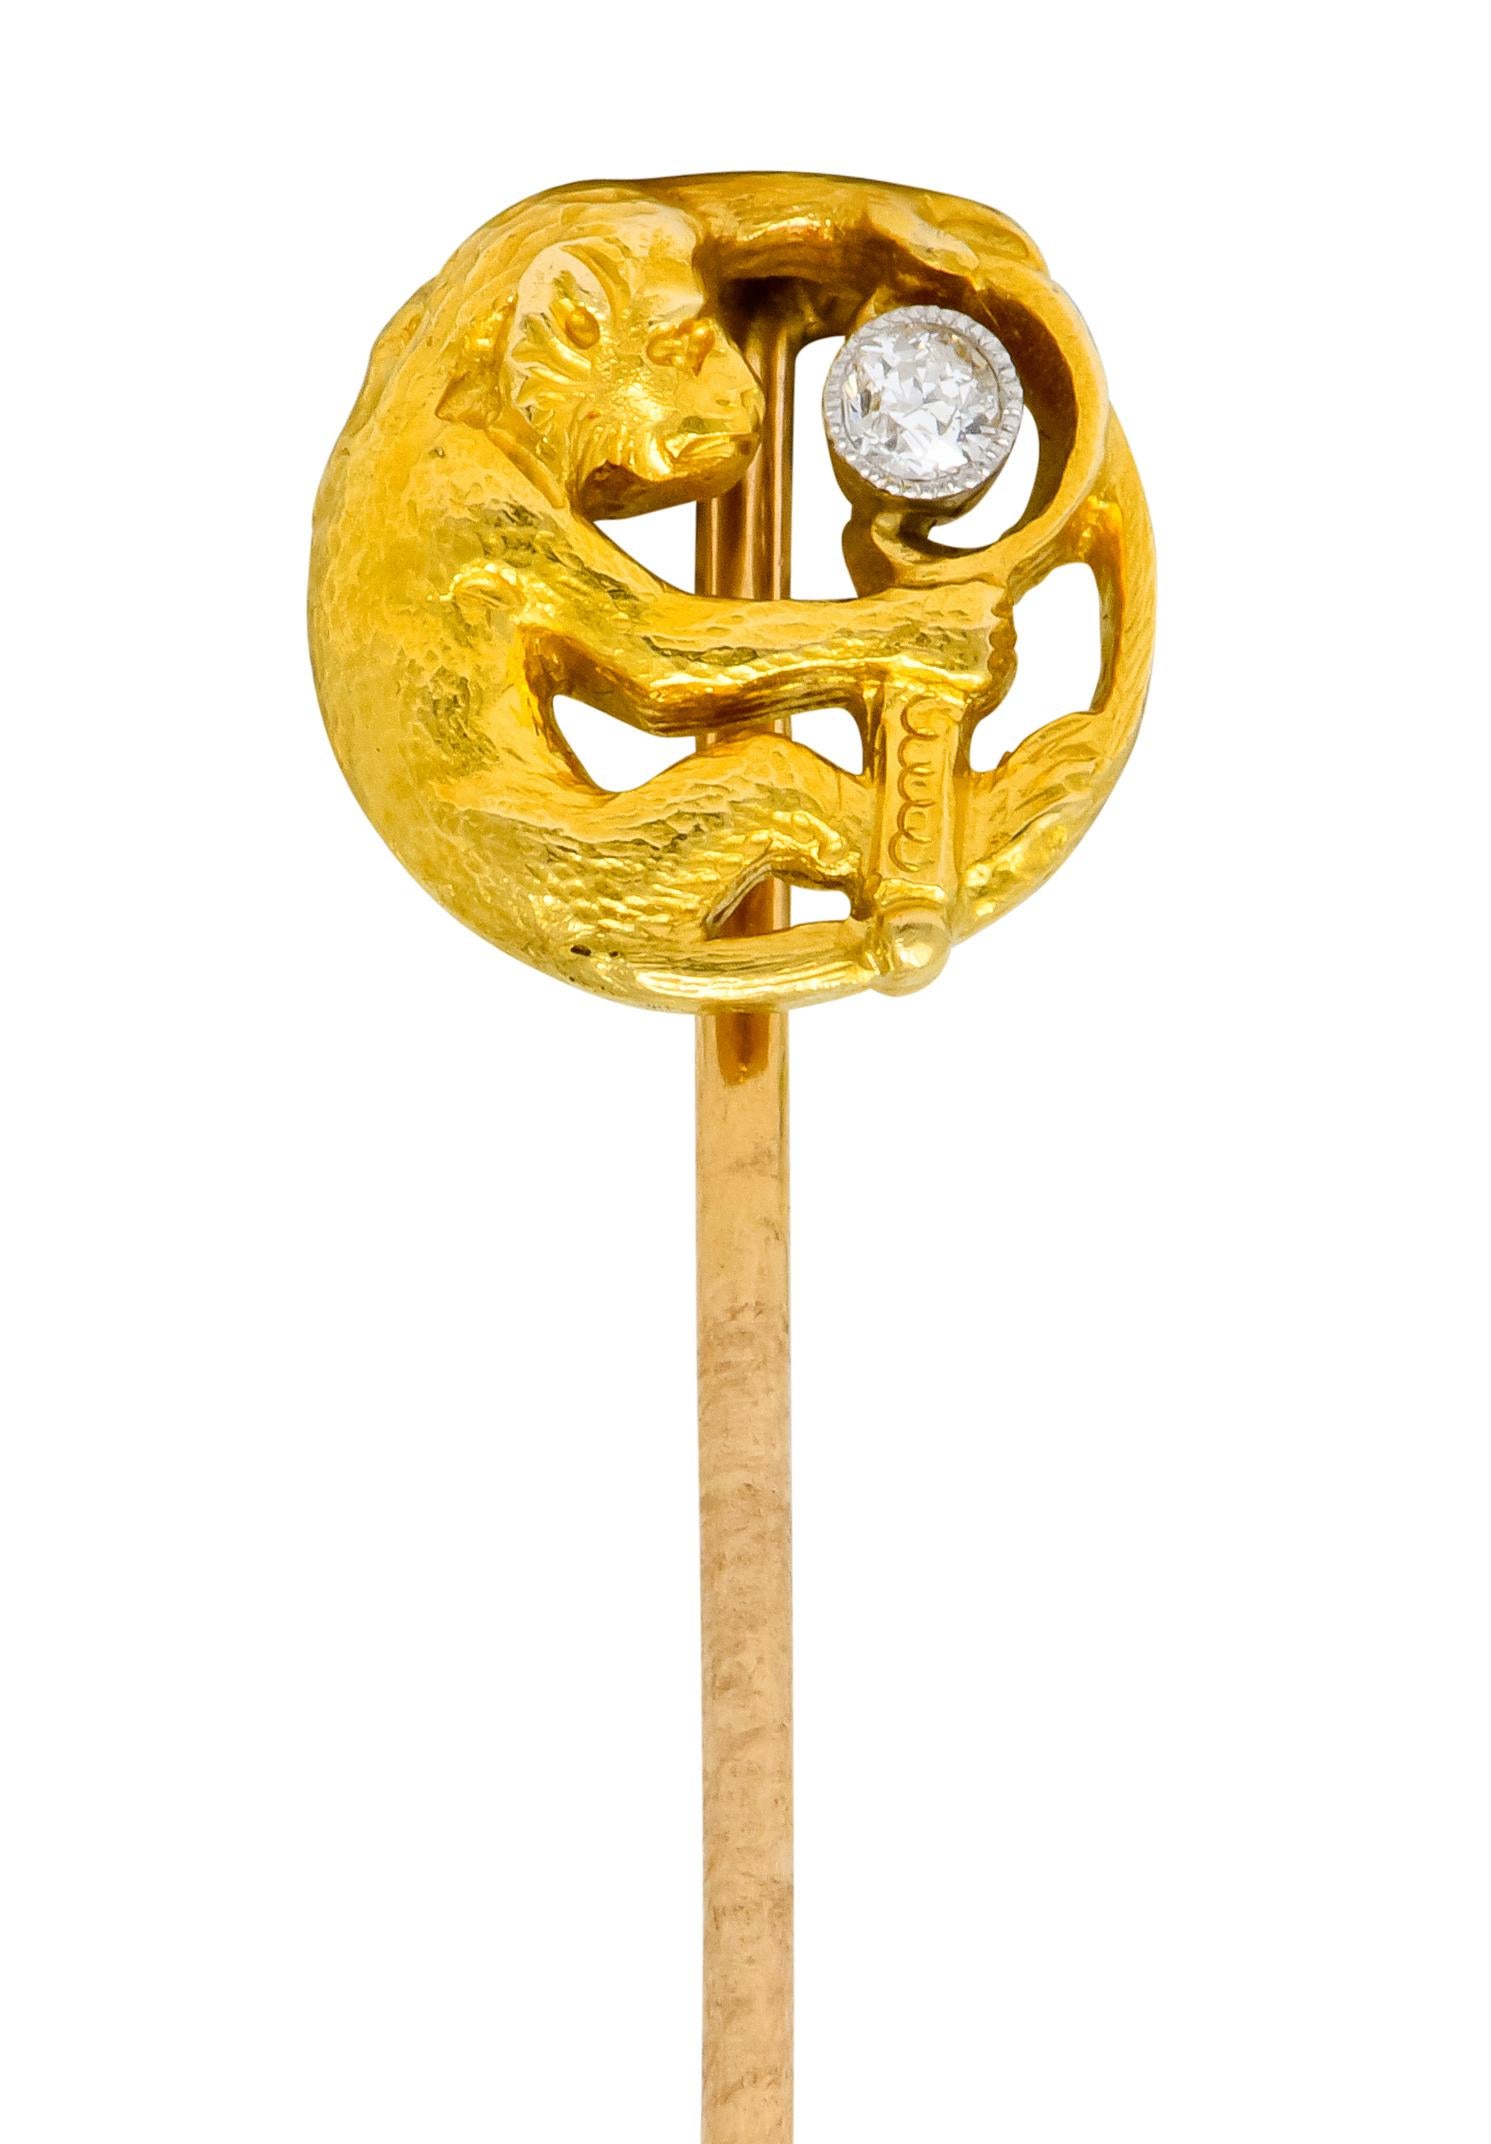 Runde Anstecknadel mit der Darstellung eines Affen, der einen Spiegel hält, mit fein strukturiertem Fell

Spiegel, akzentuiert durch einen Diamanten im alten europäischen Schliff, eingefasst in Platin mit Milgrain, mit einem Gewicht von etwa 0,06